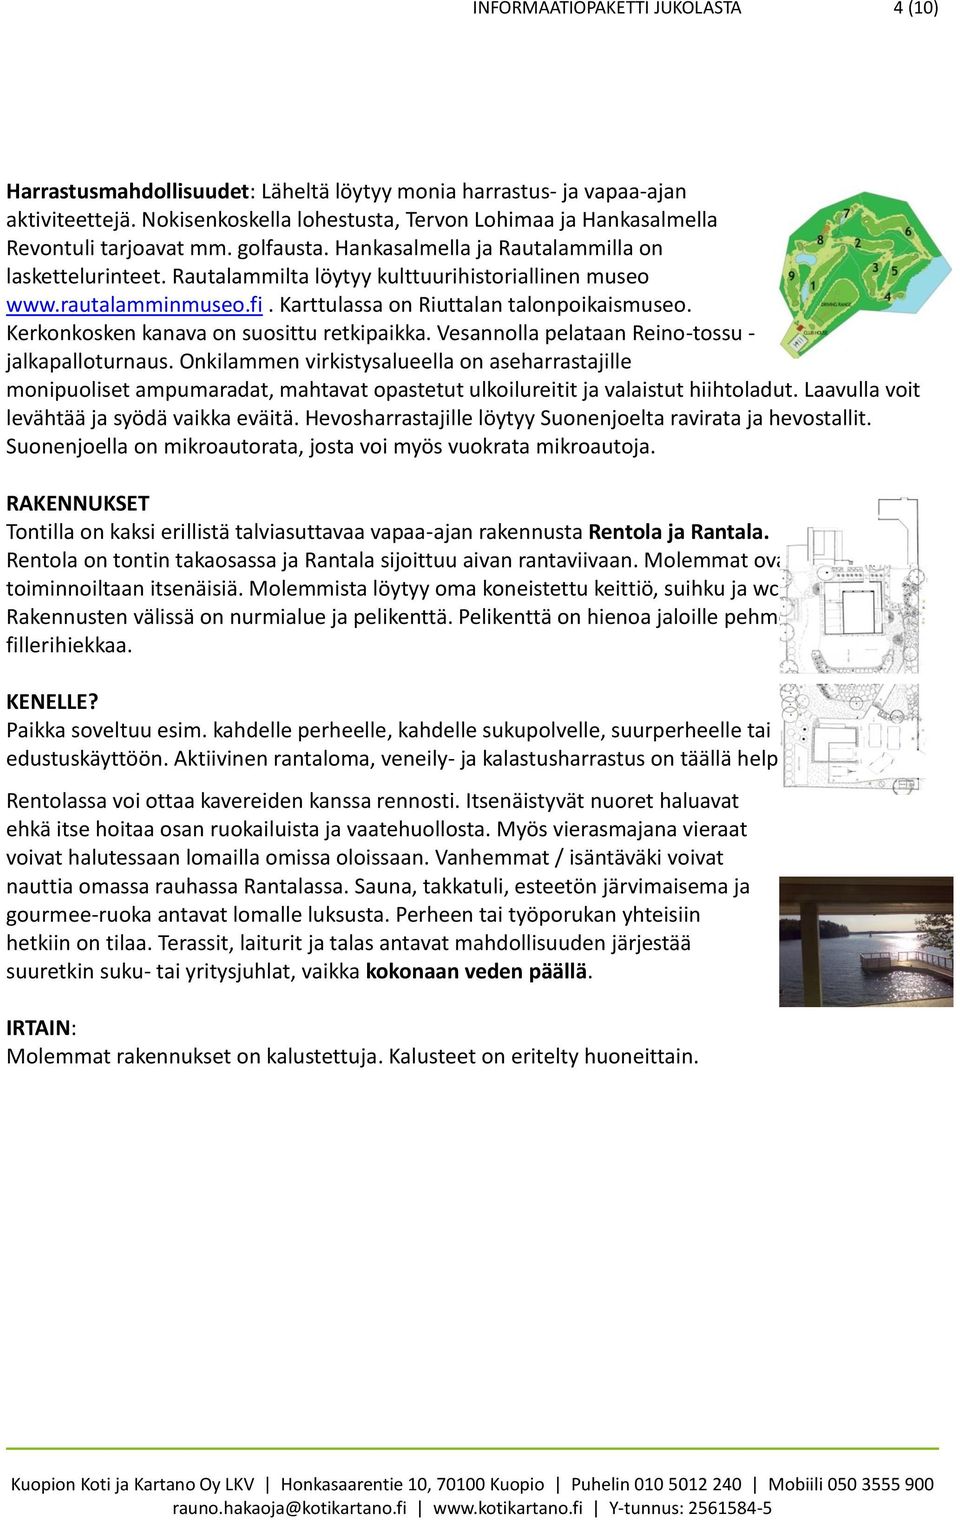 Rautalammilta löytyy kulttuurihistoriallinen museo www.rautalamminmuseo.fi. Karttulassa on Riuttalan talonpoikaismuseo. Kerkonkosken kanava on suosittu retkipaikka.